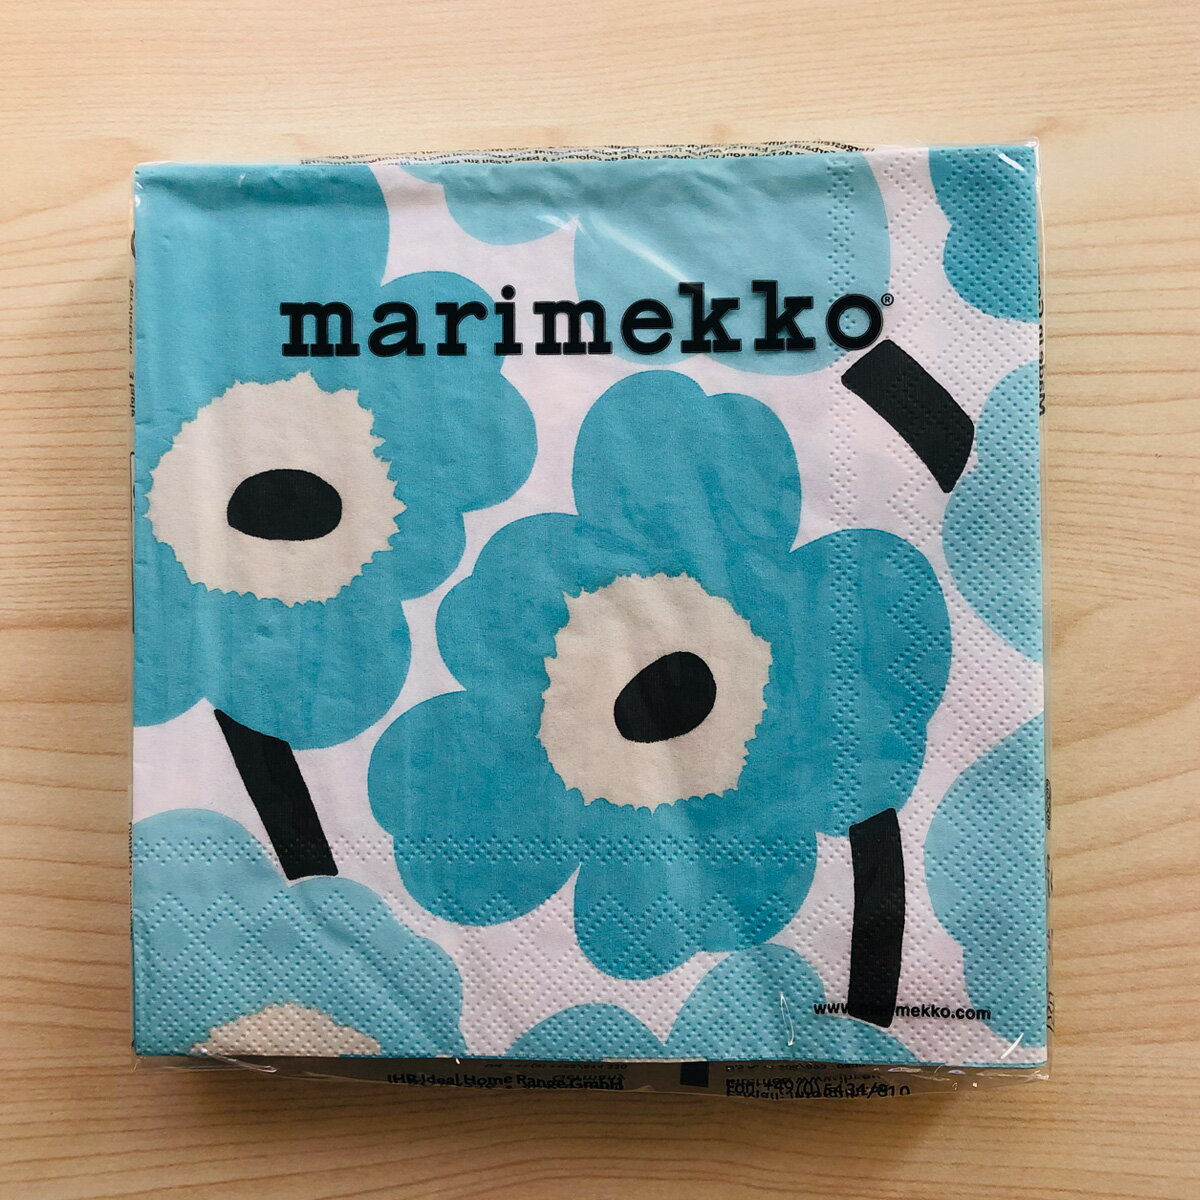 マリメッコ marimekko ペーパーナプキン 紙ナプキン ランチサイズ 20枚 552642 UNIKKO ウニッコ turquoise ライトブルー